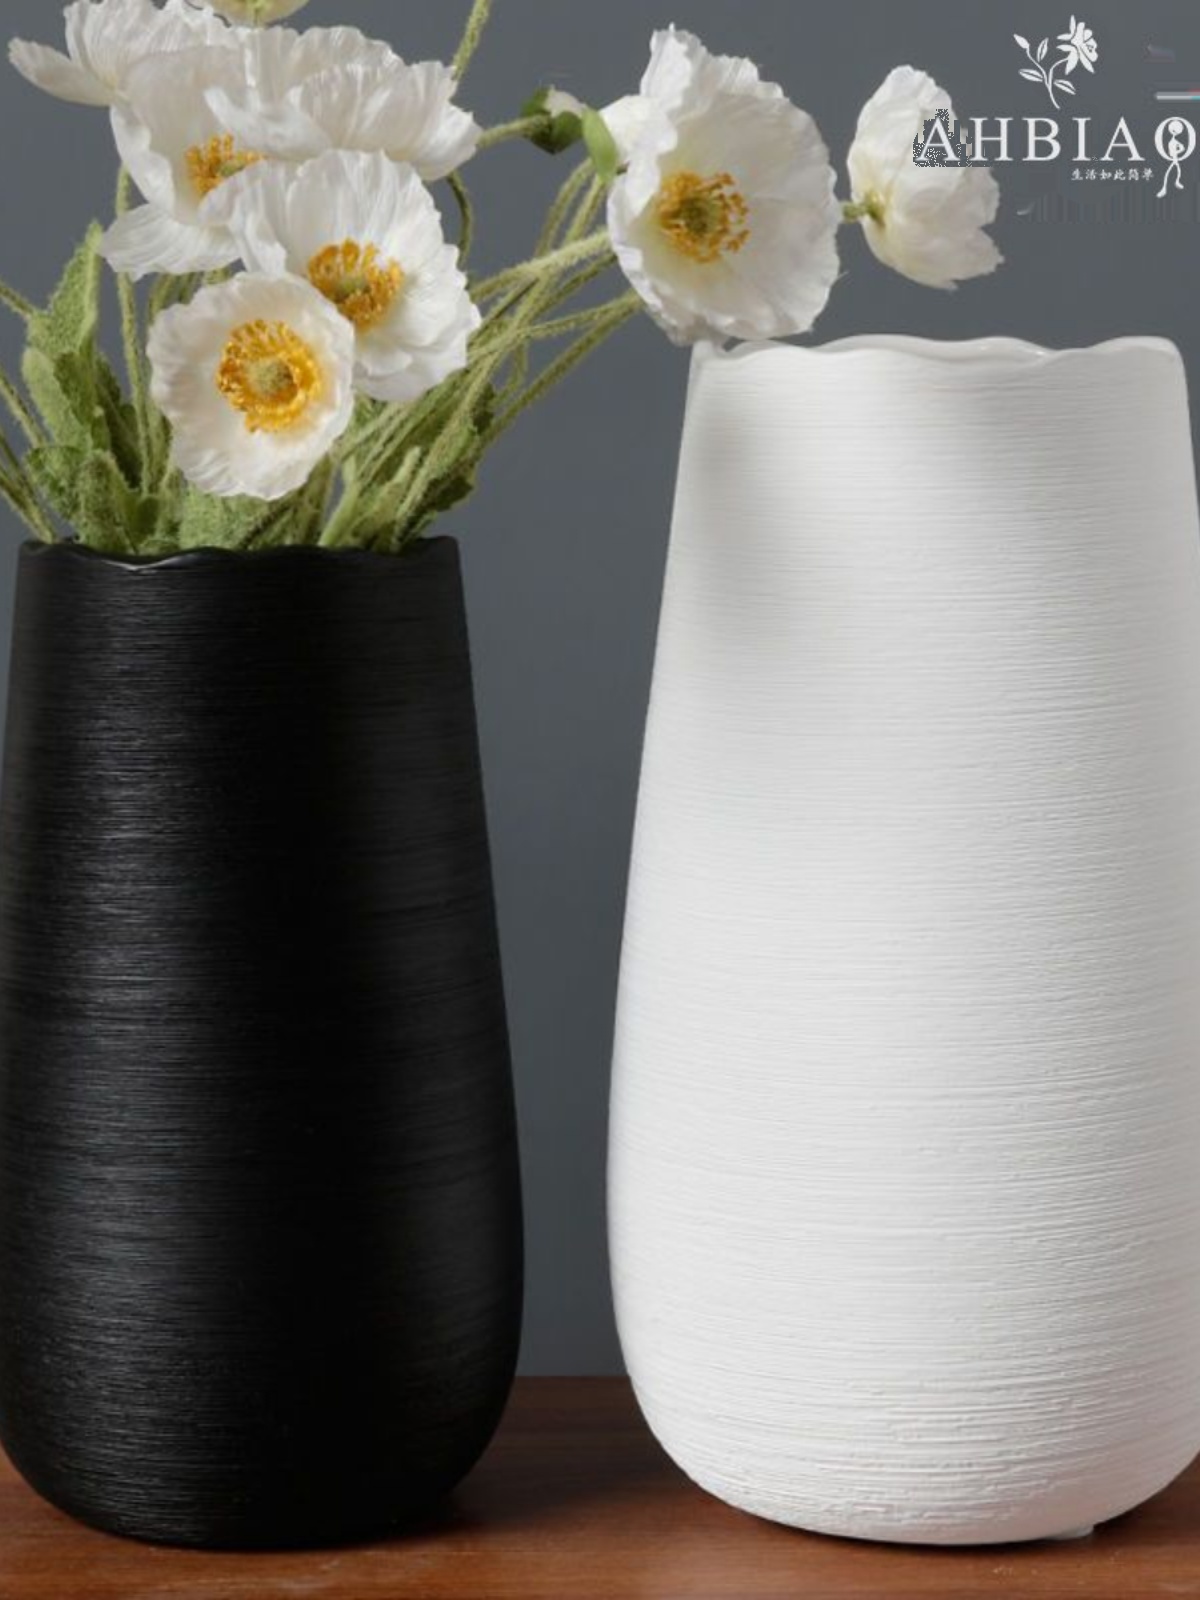 新品花瓶陶瓷种花盆大号陶瓷插花现代简约水养摆件客厅黑白色干花